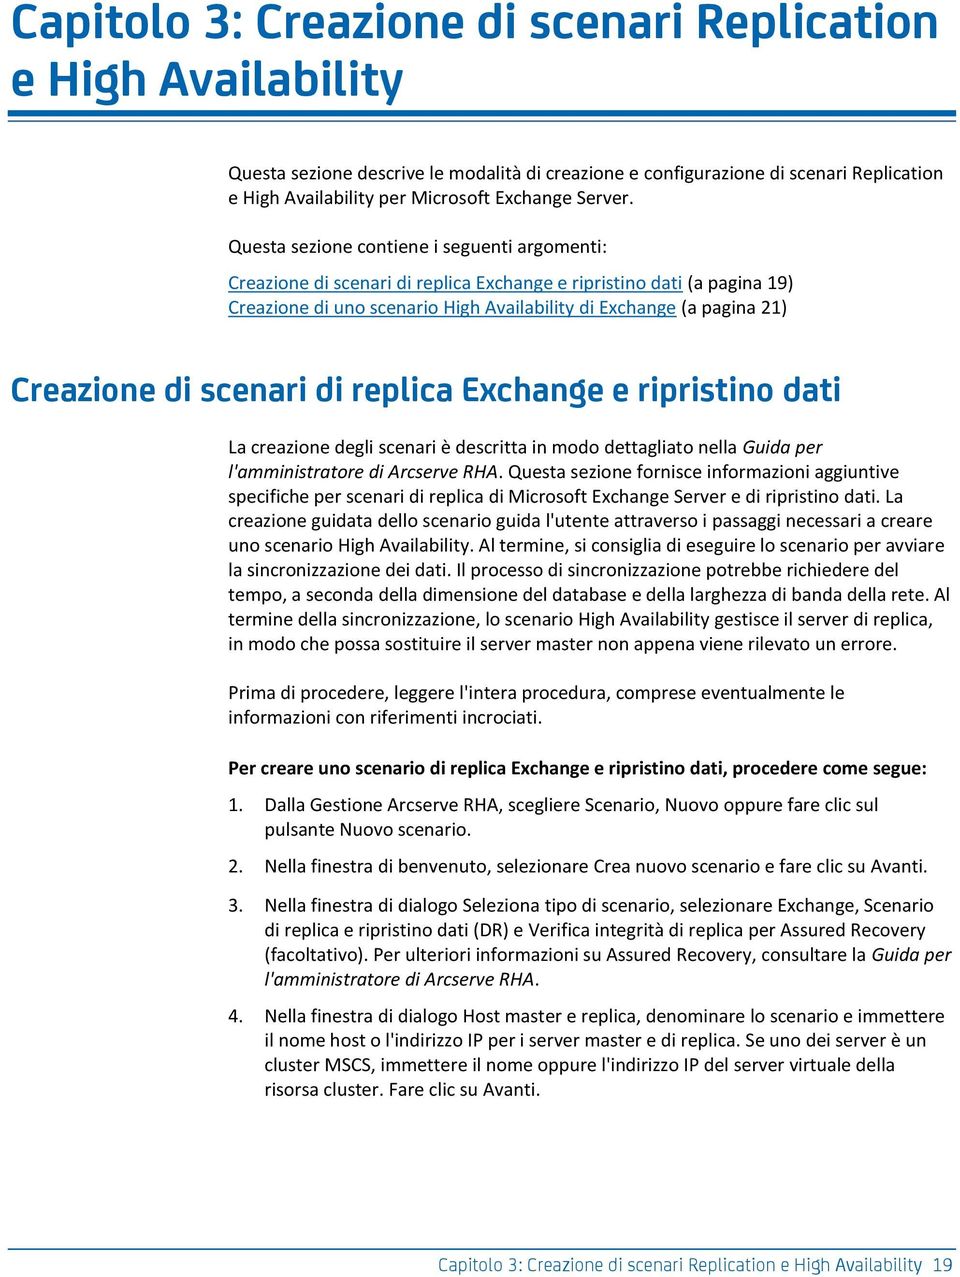 Questa sezione contiene i seguenti argomenti: Creazione di scenari di replica Exchange e ripristino dati (a pagina 19) Creazione di uno scenario High Availability di Exchange (a pagina 21) Creazione